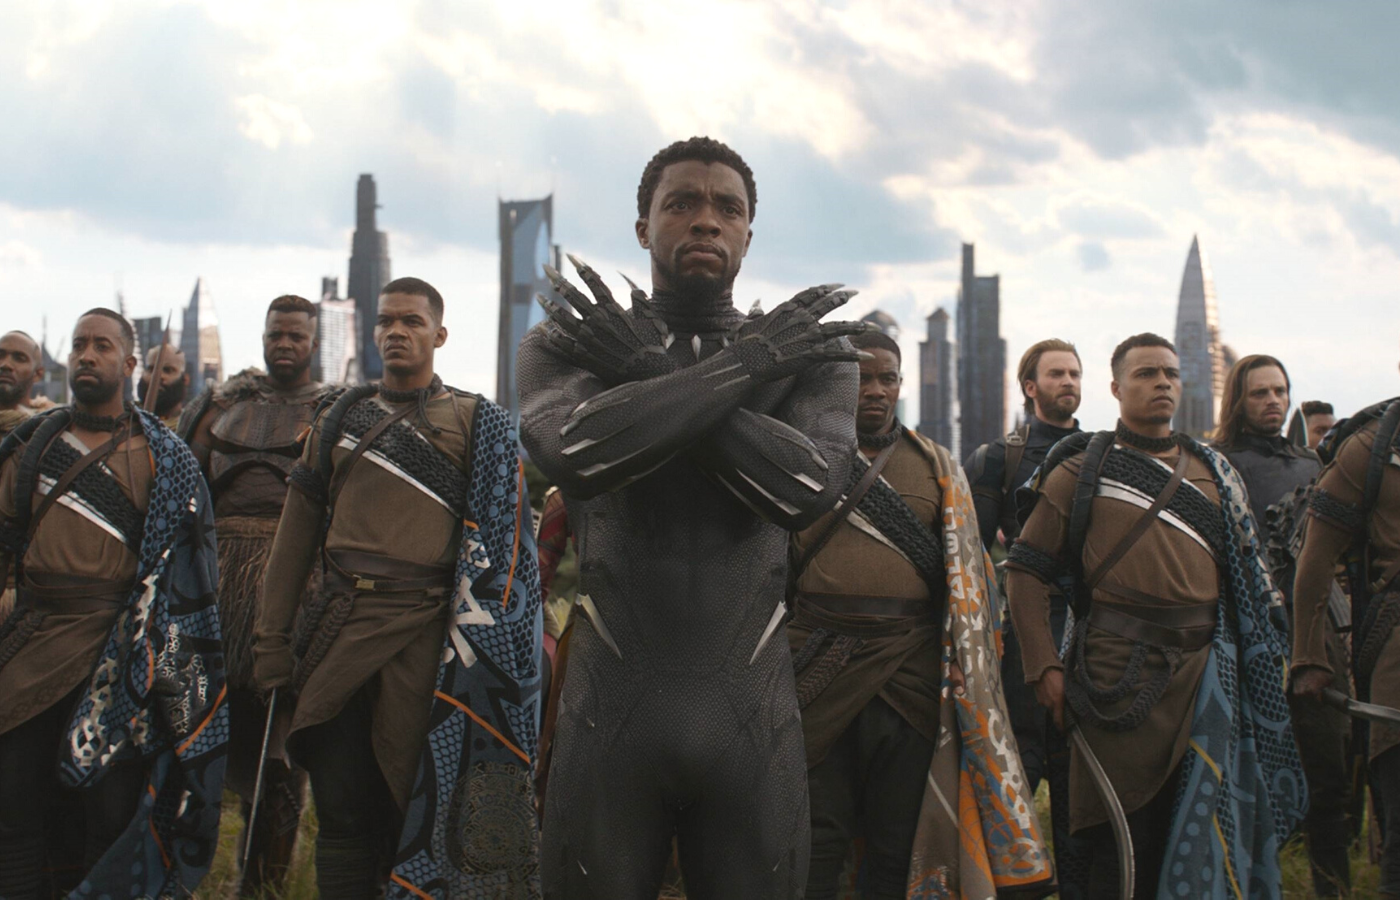 Chadwicka Bosemana możemy oglądać także w filmie „Avengers: Wojna bez granic”. Na zdjęciu m.in. Czarna Pantera, Kapitan Ameryka oraz Zimowy Żołnierz (Bucky Barnes) (Fot. PICTURELUX/BEW)